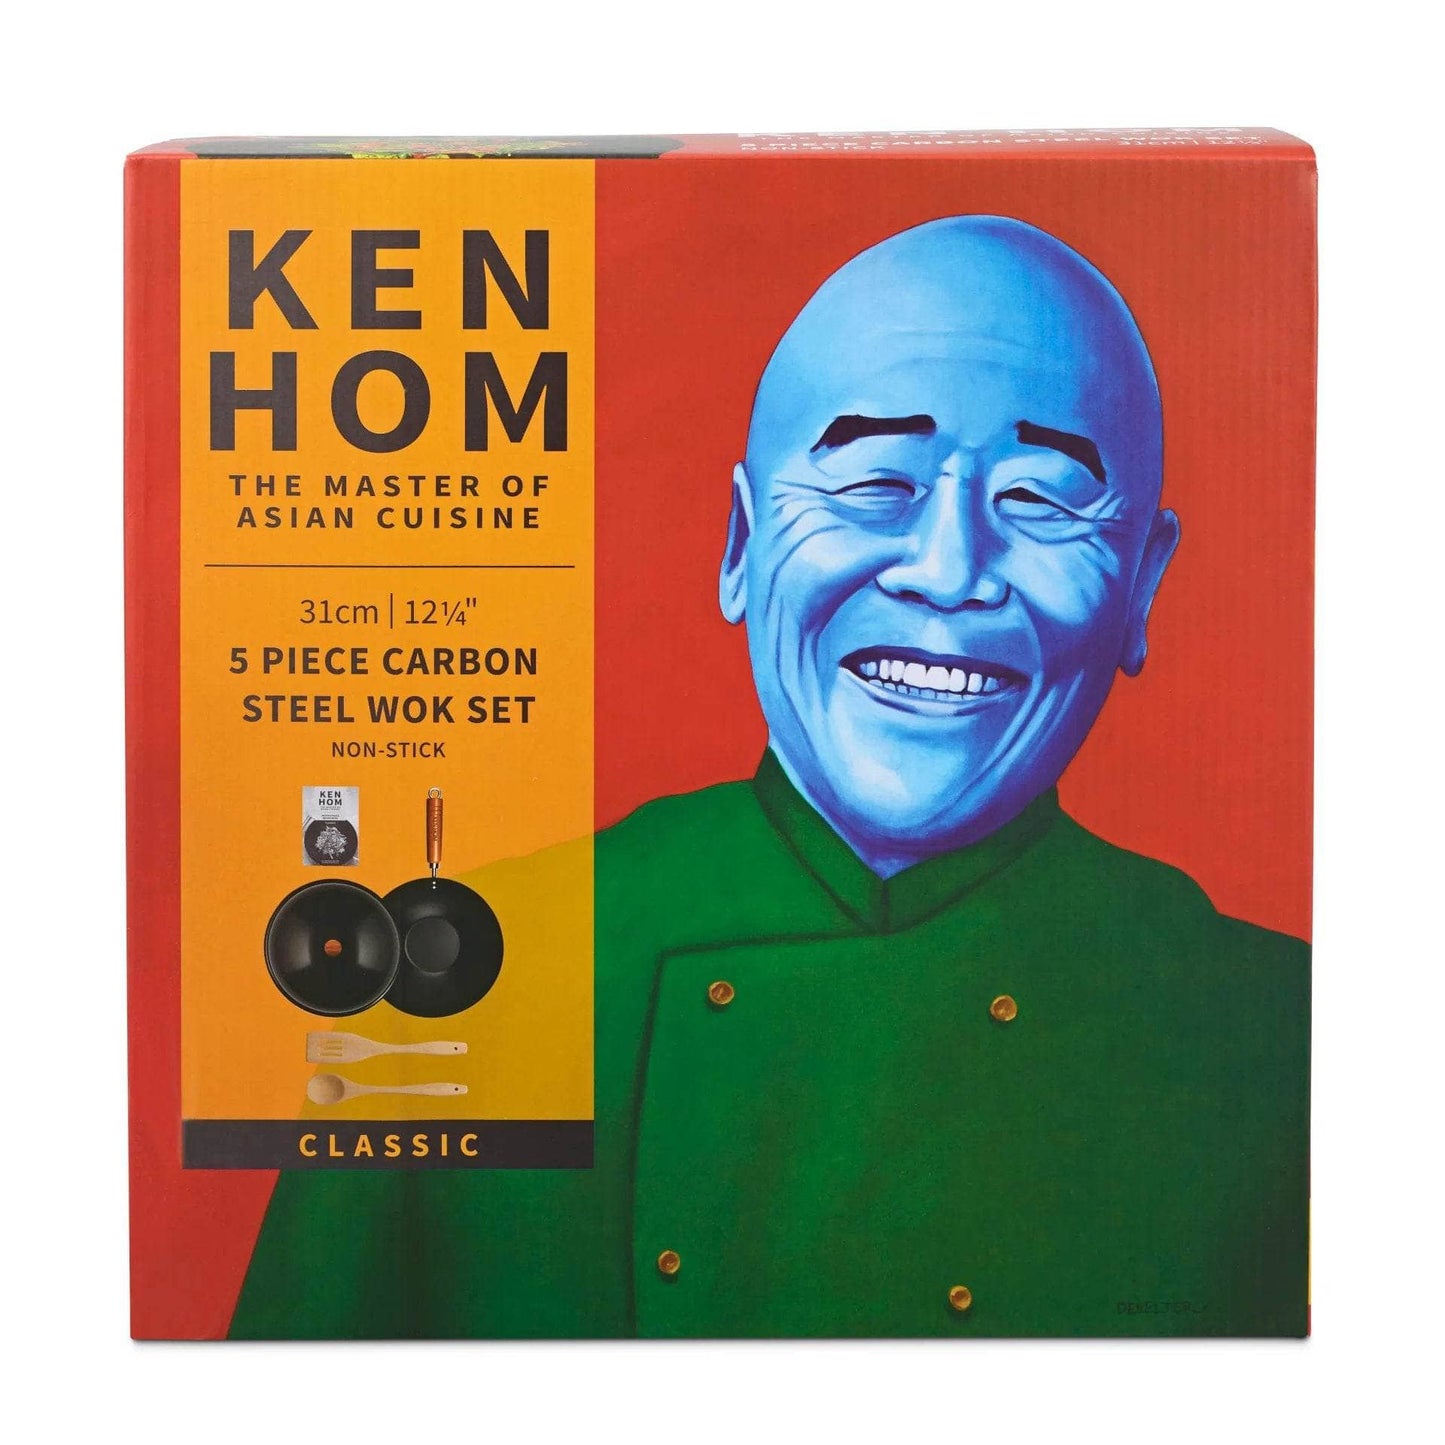  -  Ken Hom Classic Wok Set 5P 31Cm  -  50153539